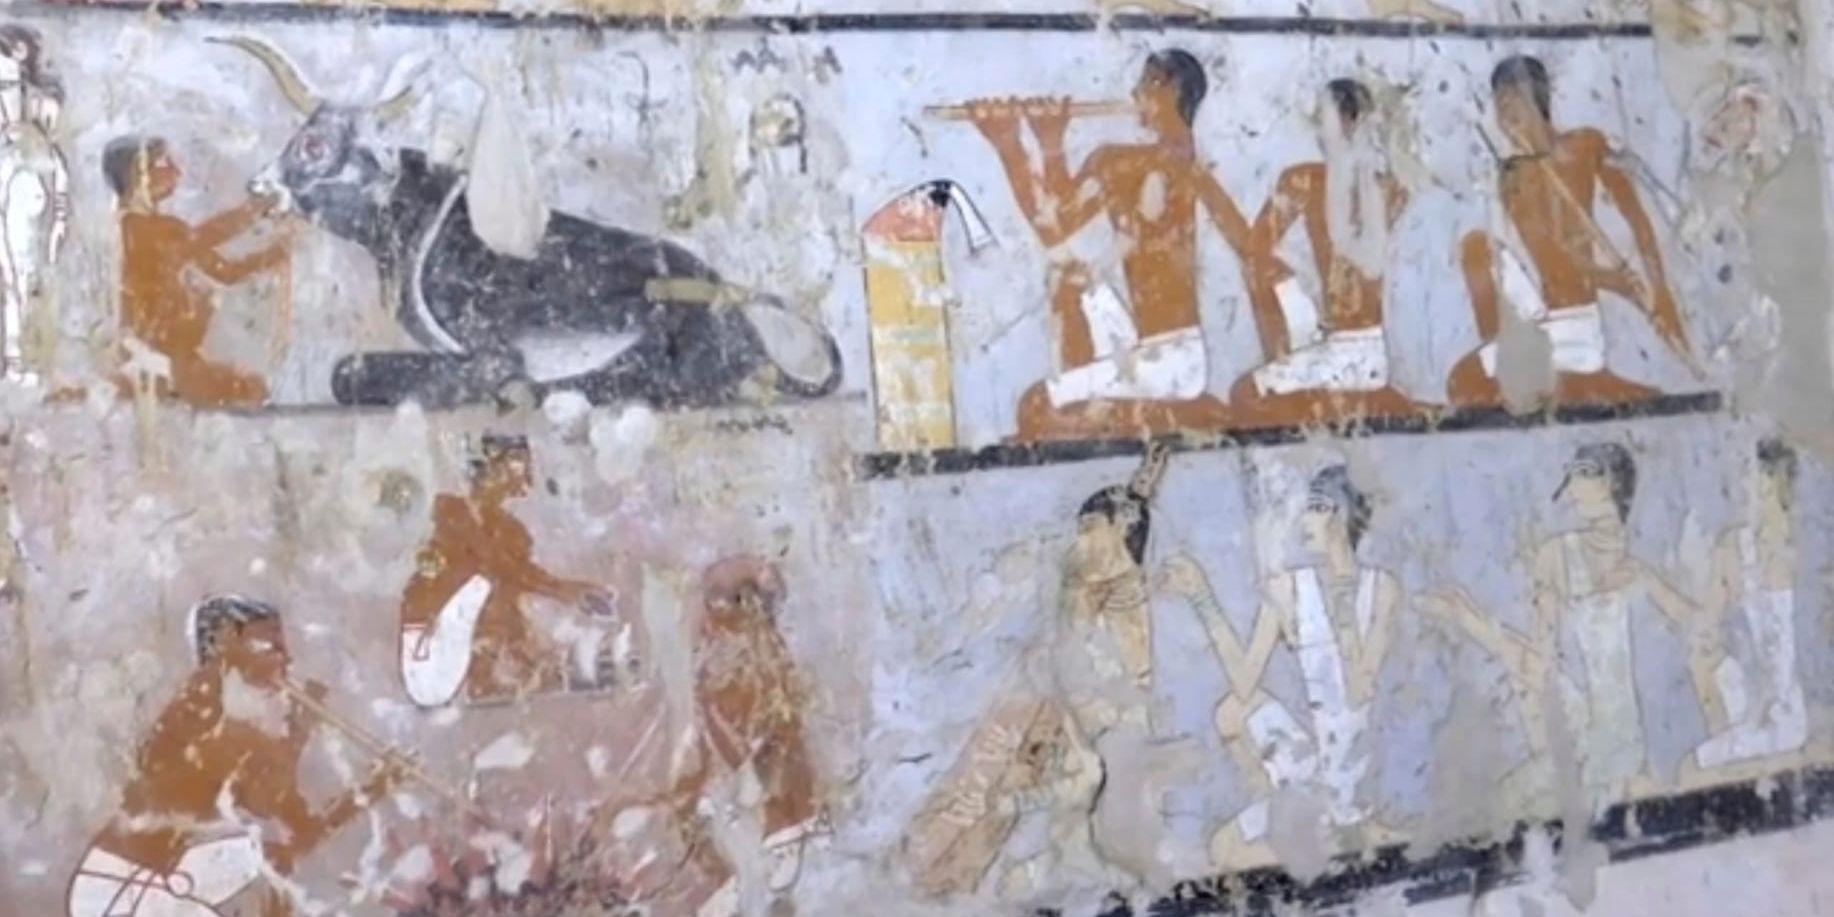 Väggmålningar från en runt 4 400 år gammal nyupptäckt grav vid Gizaområdet utanför Kairo. Bilderna föreställer den högt uppsatta prästinnan Hetpet.